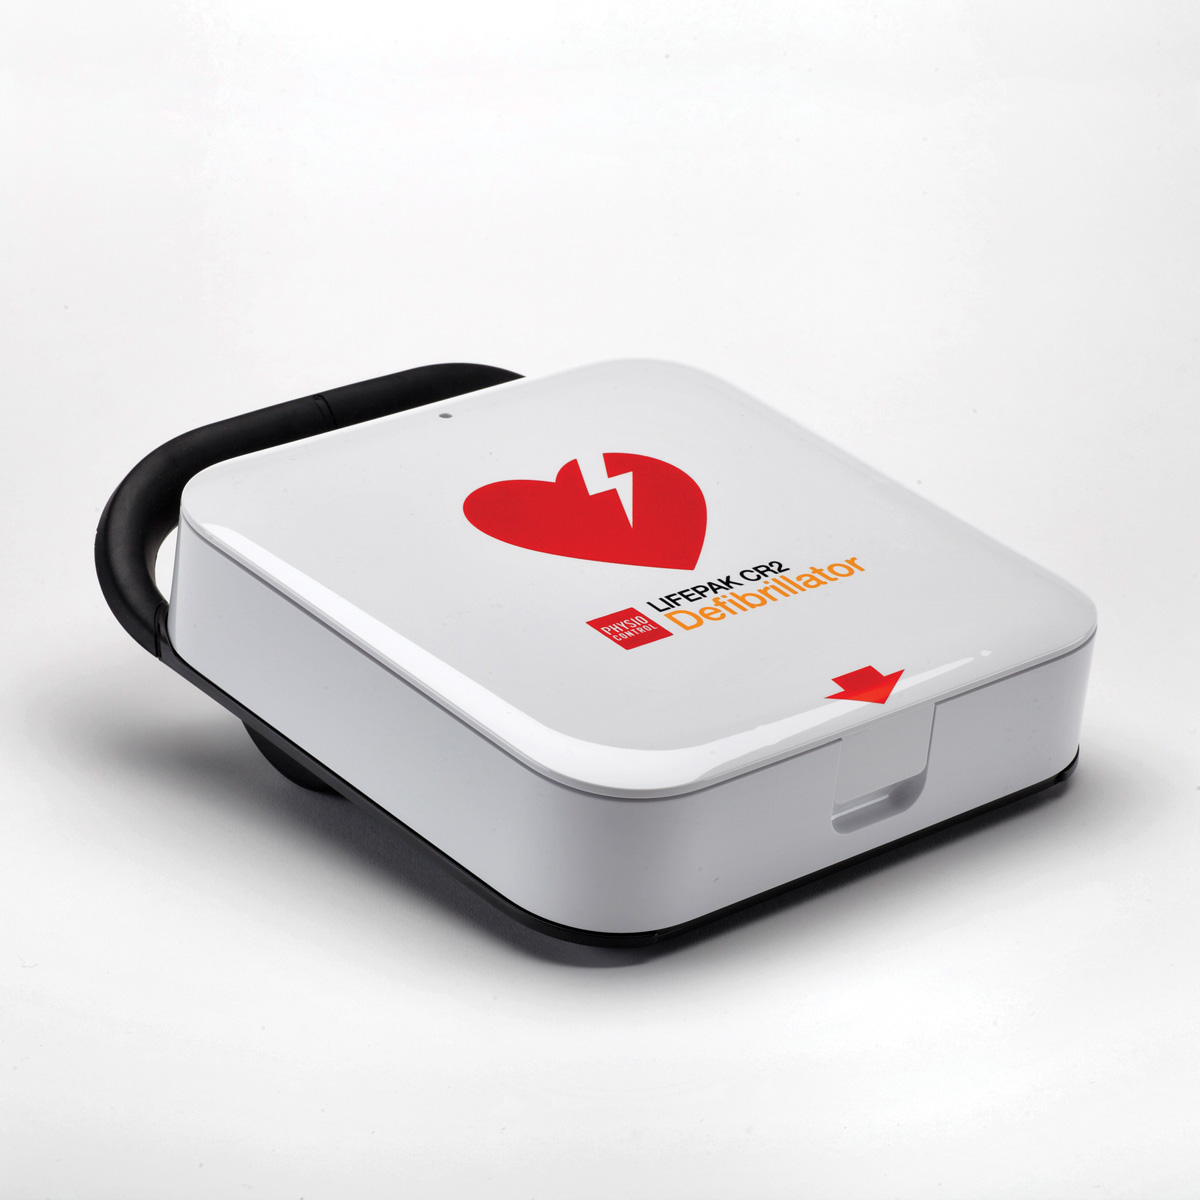 99512-000120_2_LIFEPAK-CR2-AED-Defibrillator-Wi-FI_v1